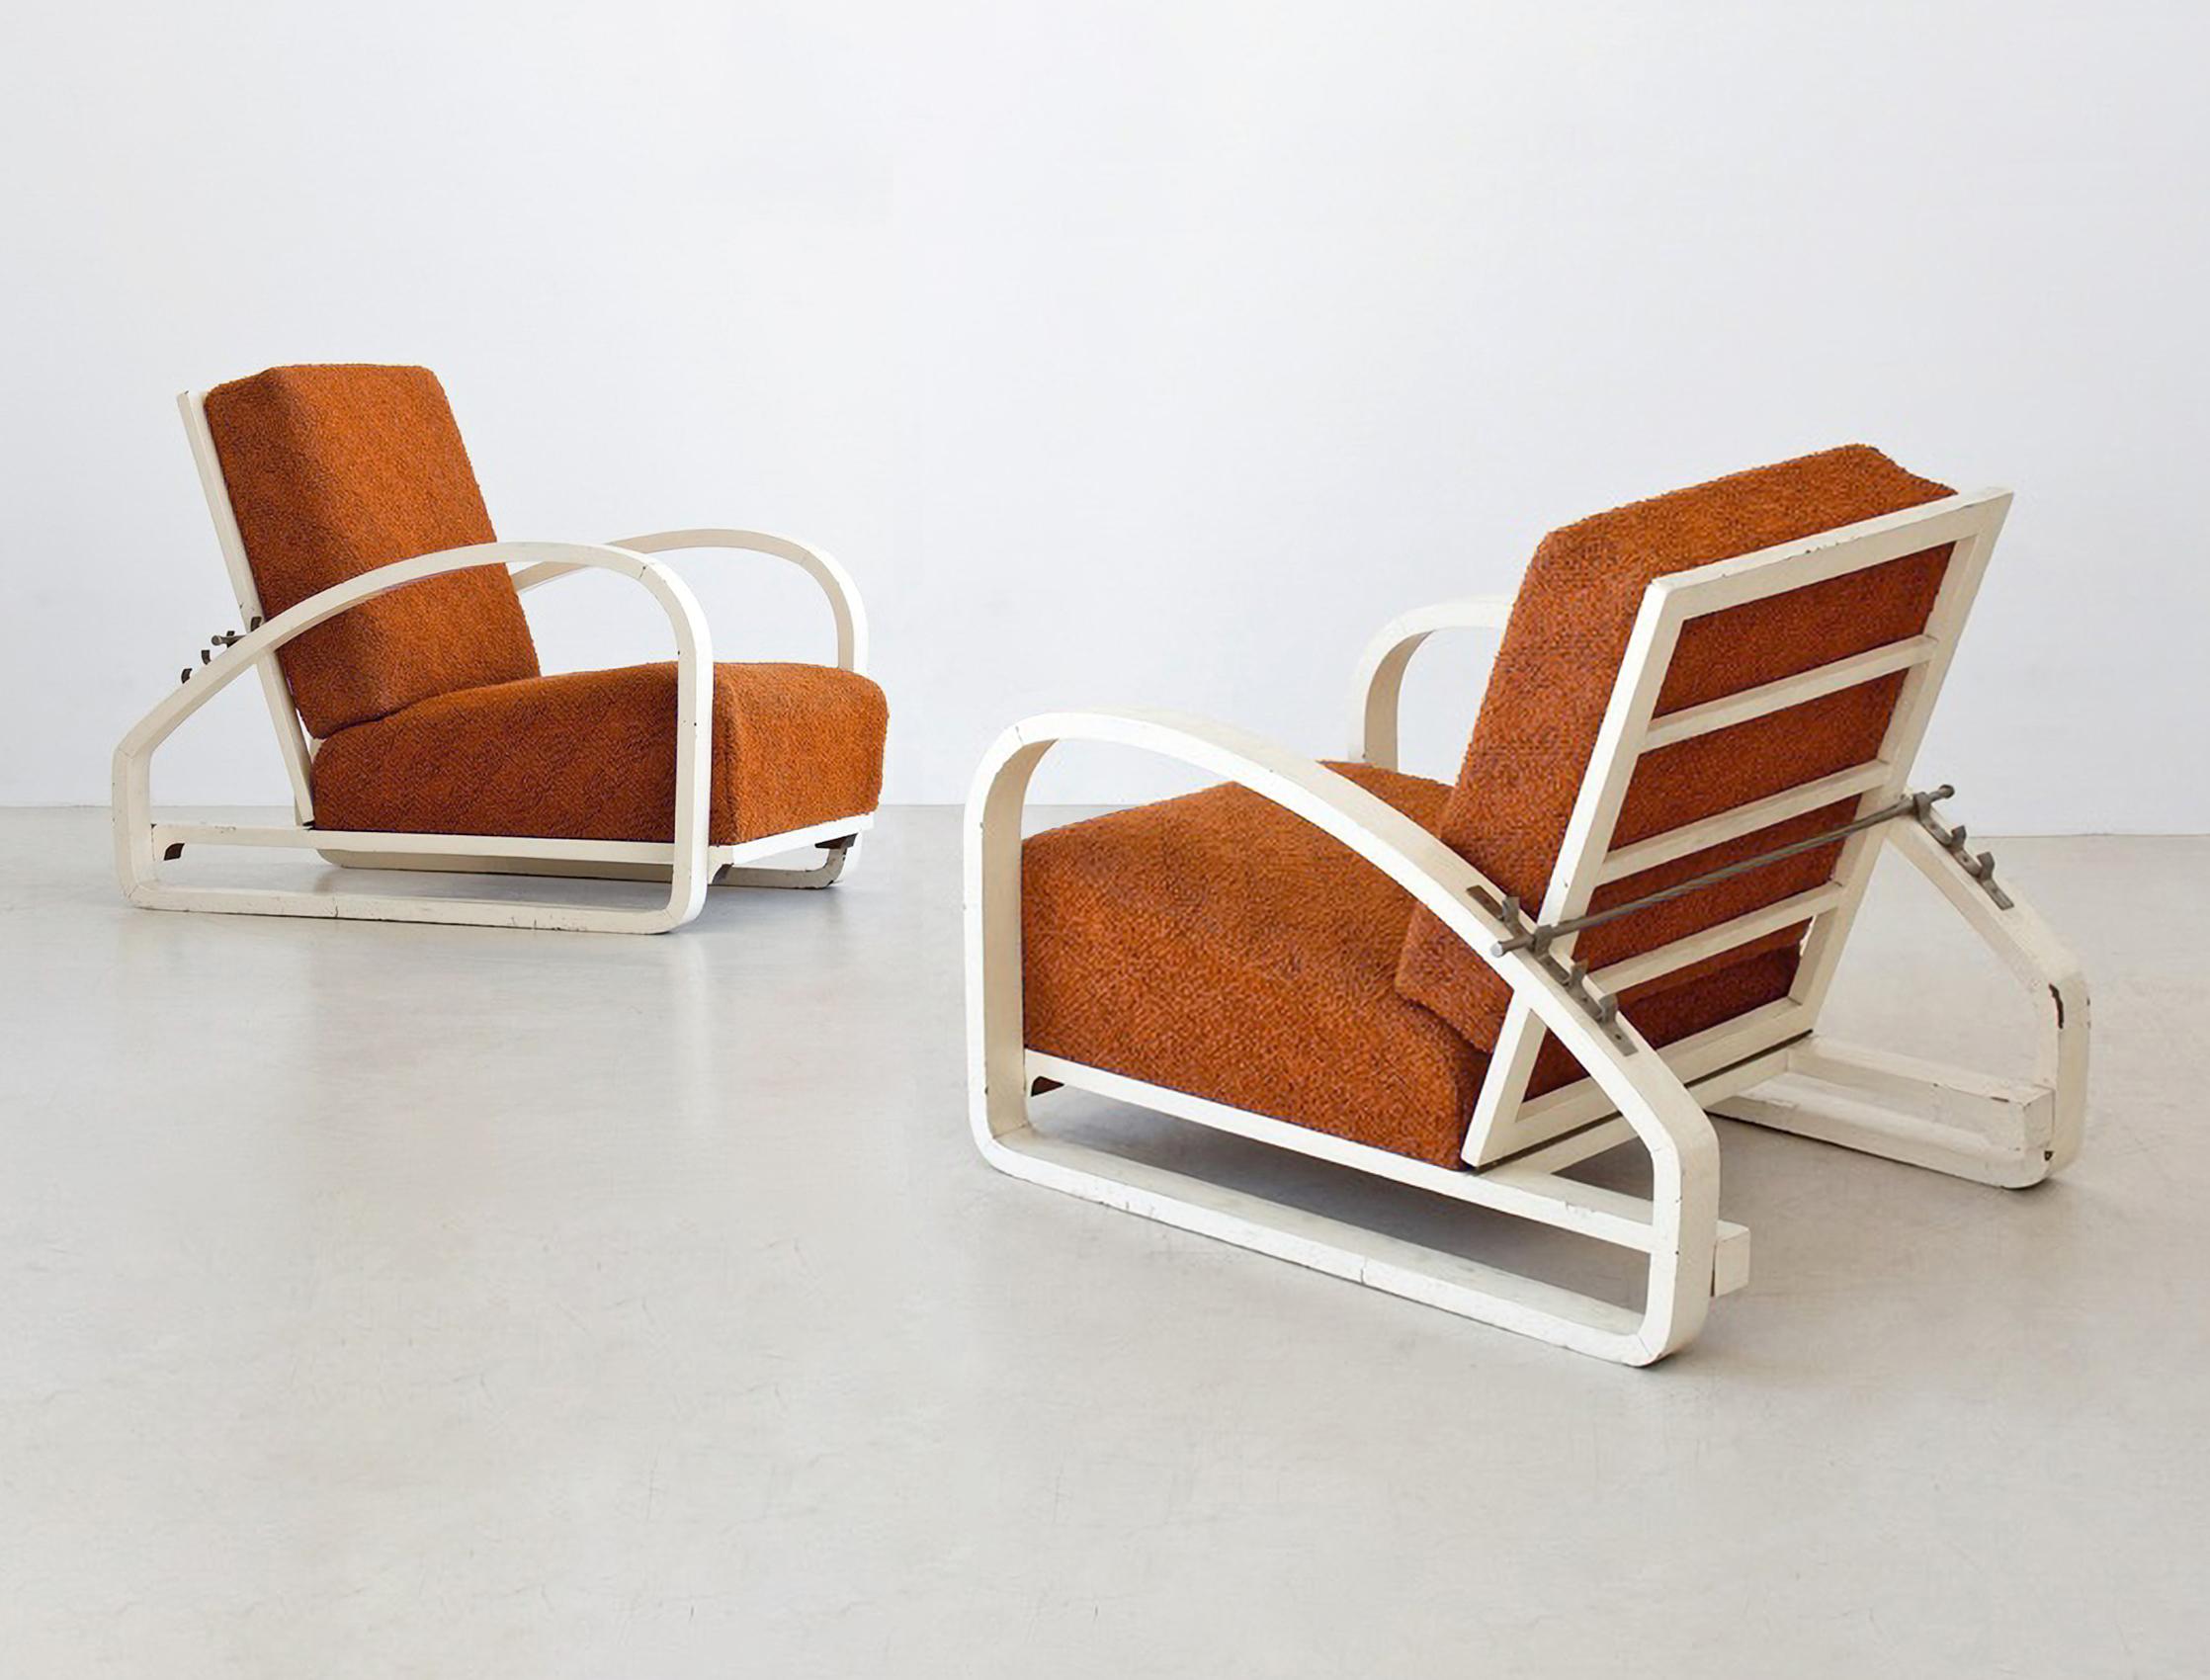 Fauteuil de relaxation moderniste en bois moulé et métal chromé avec coussins rembourrés. Ces fauteuils originaux d'avant-garde sont restaurés sur demande et disponibles en différentes quantités. La finition du bois et le matériau de rembourrage